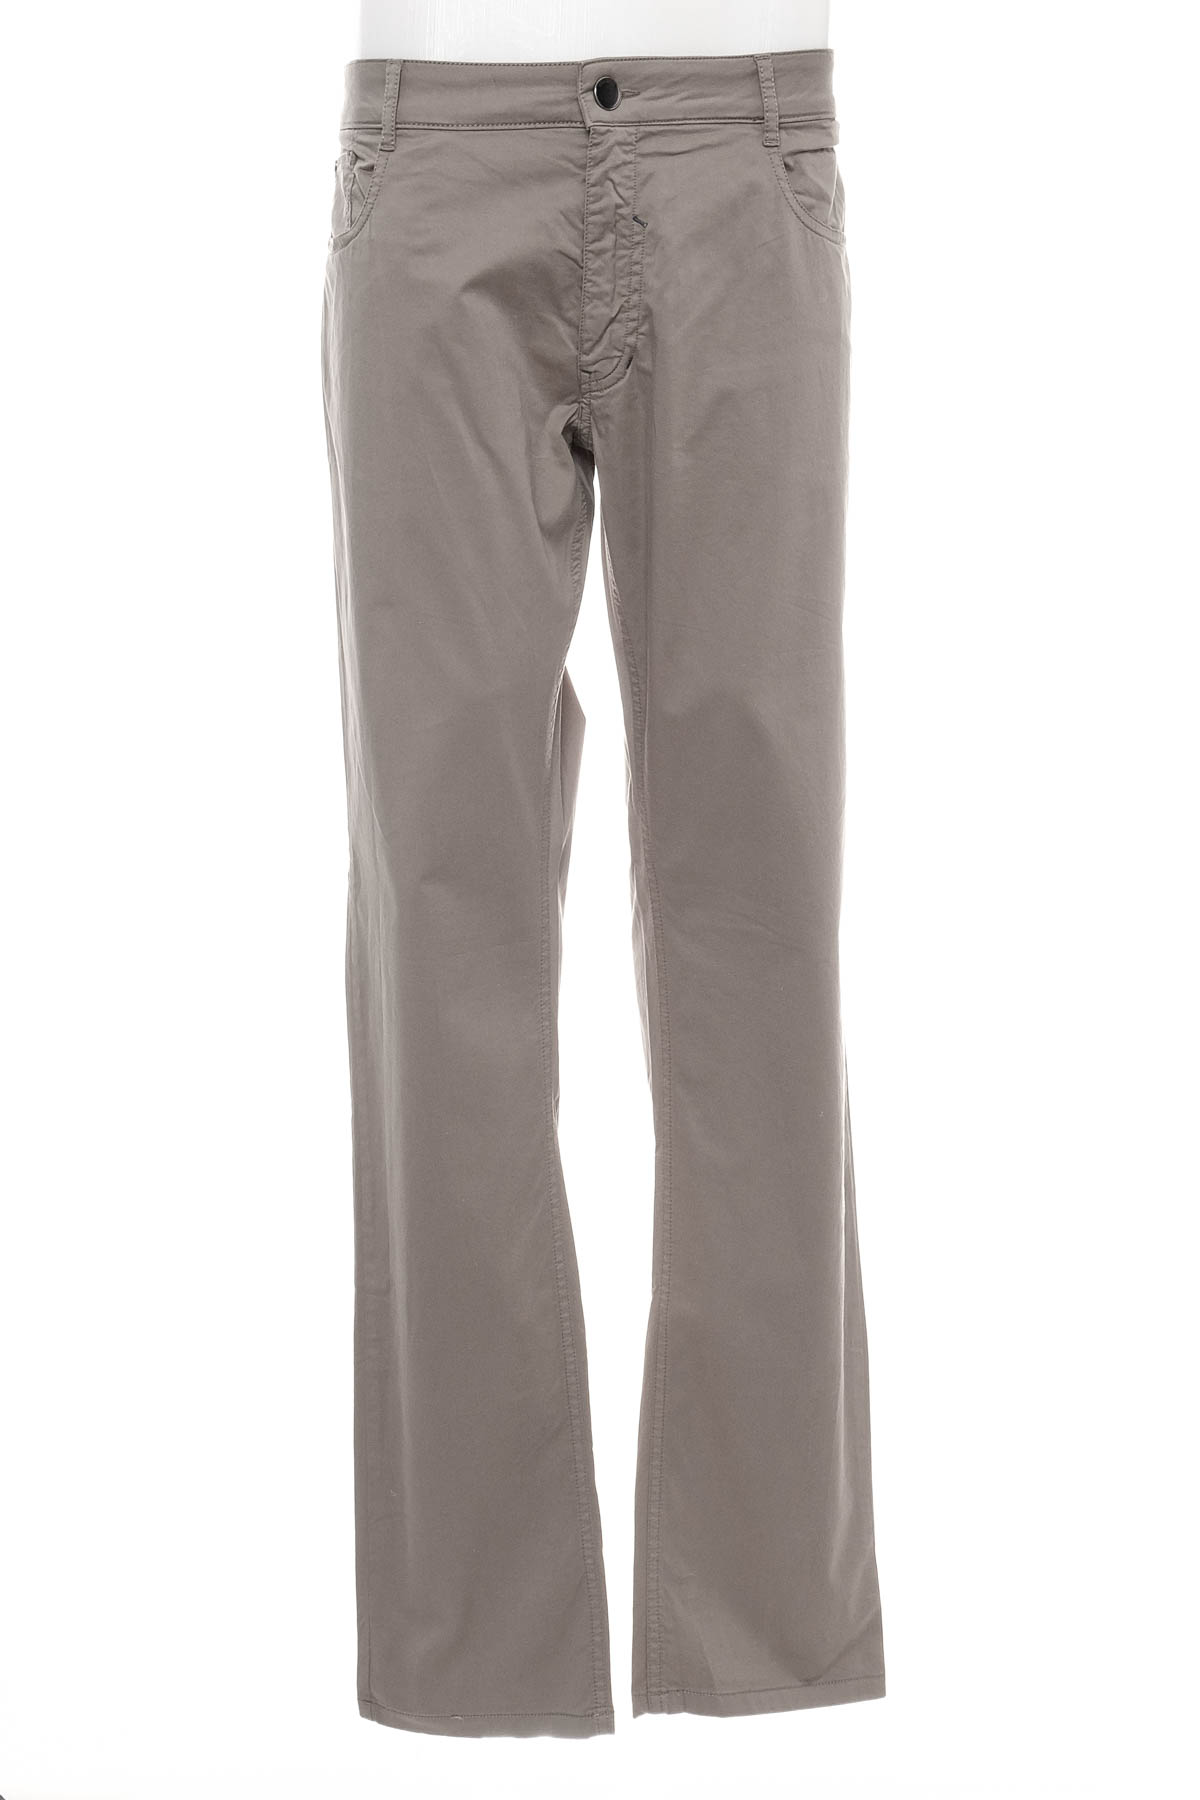 Men's trousers - PIERLUCCI - 0